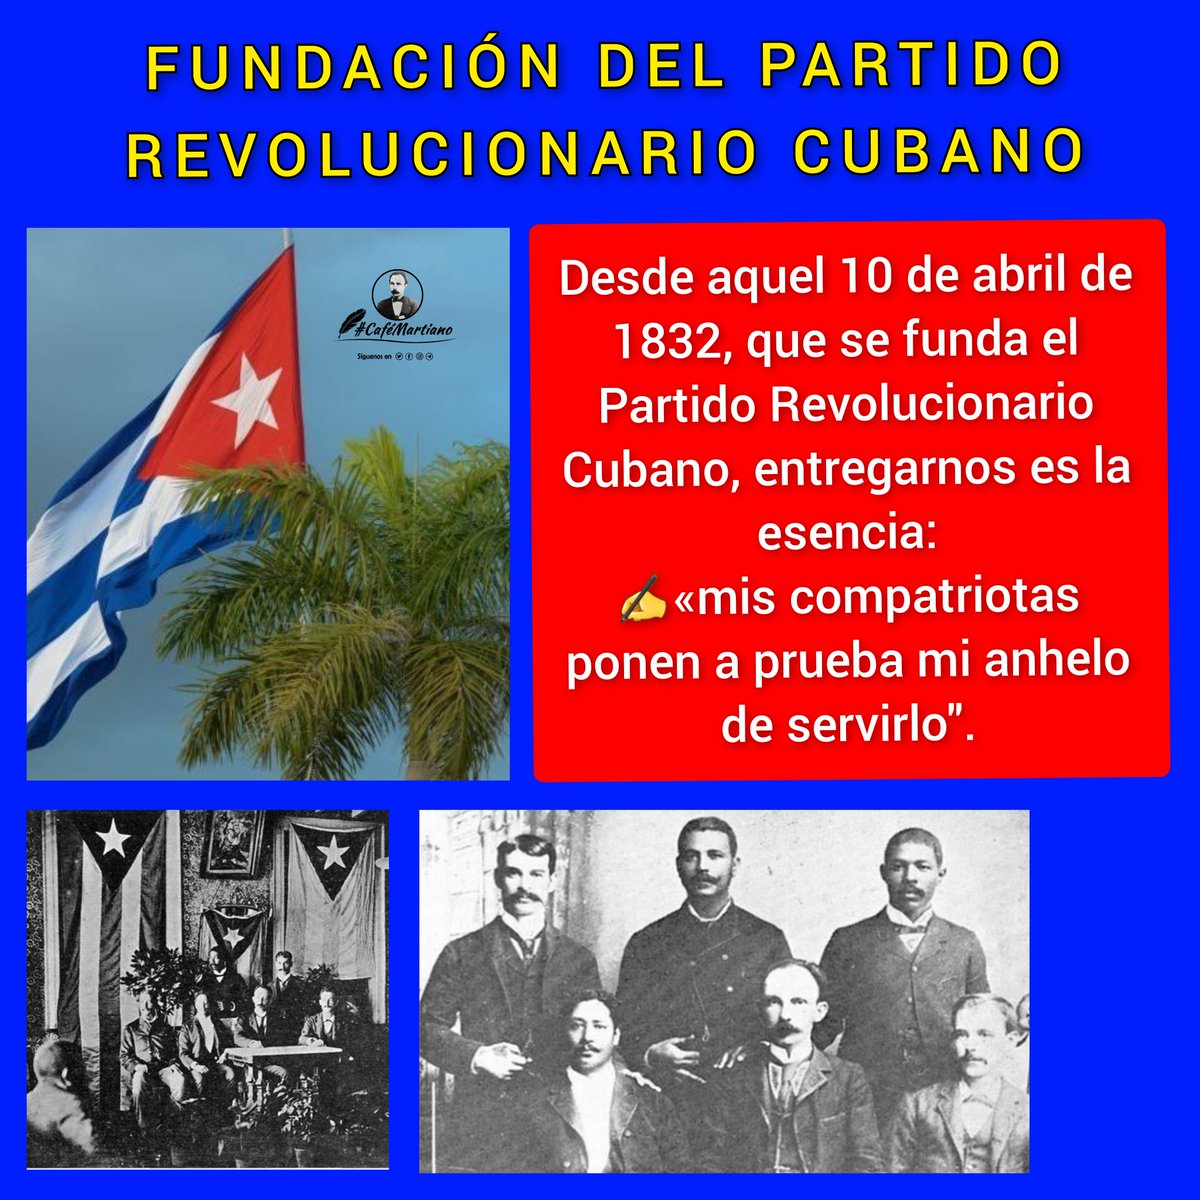 Buenos días 🇨🇺 #CaféMartiano A 132 años de la fundación del Partido Revolucionario Cubano, defendemos la verdad de que en la unión está la fuerza. ✍️' …Para la obra común se funda el partido, de las almas magnánimas y limpias'. #CubaViveEnSuHistoria